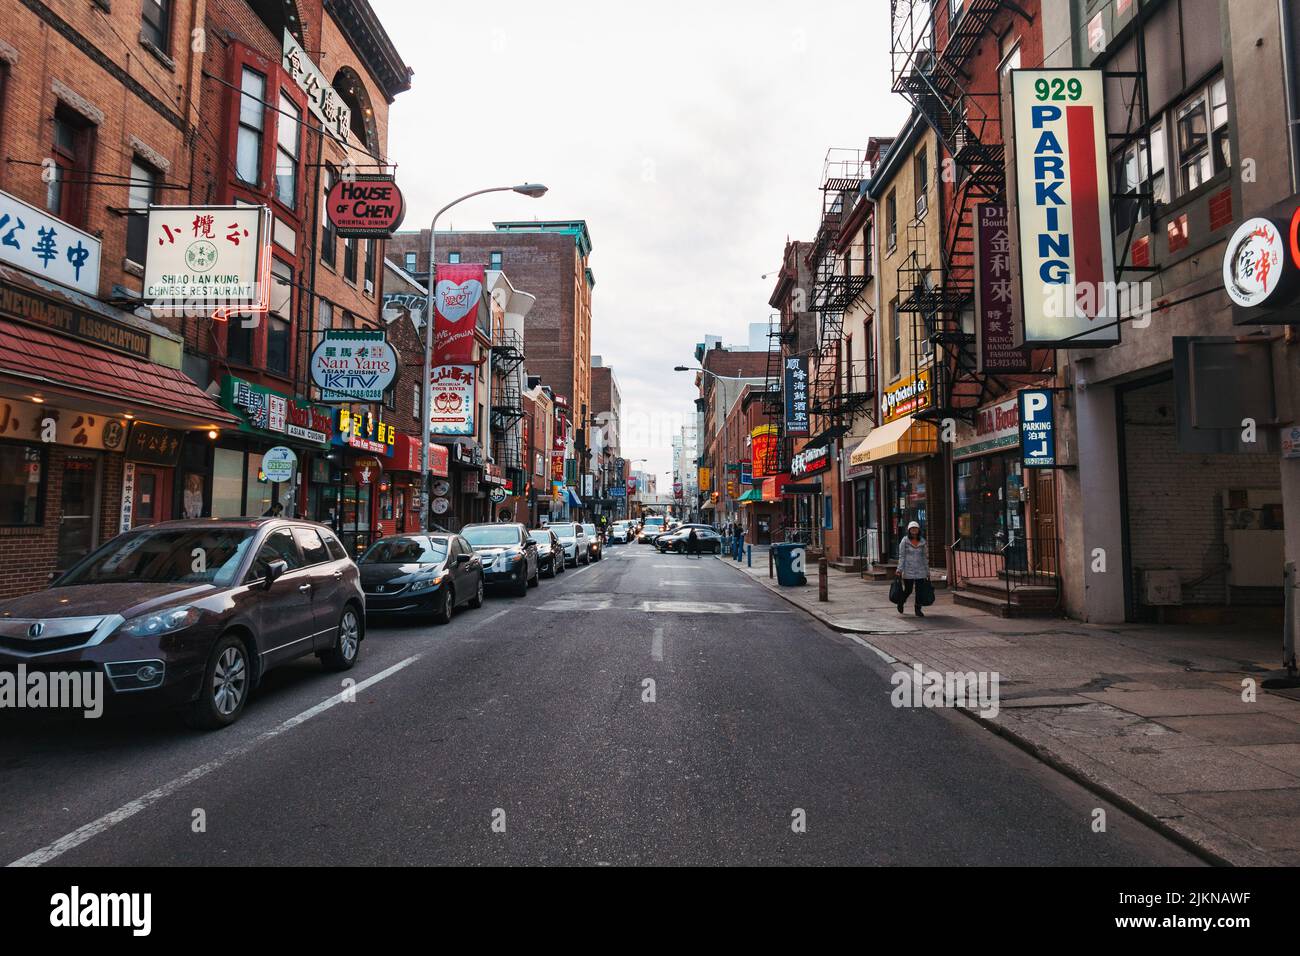 Mirando hacia abajo una calle de la ciudad en Chinatown, Filadelfia, EE.UU Foto de stock